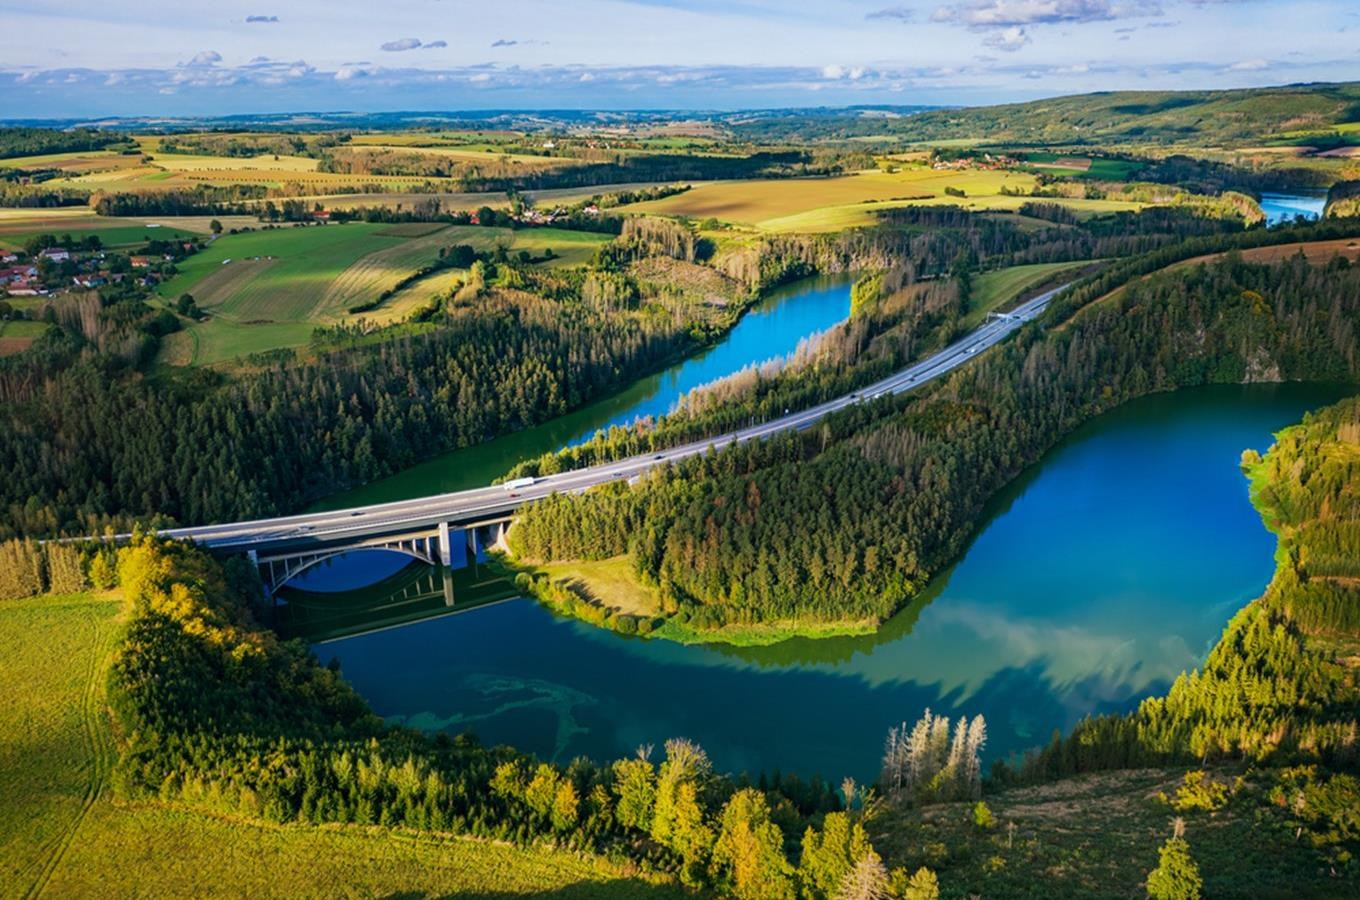 Vodní dílo Švihov (Želivka) – největší vodárenská nádrž v České republice